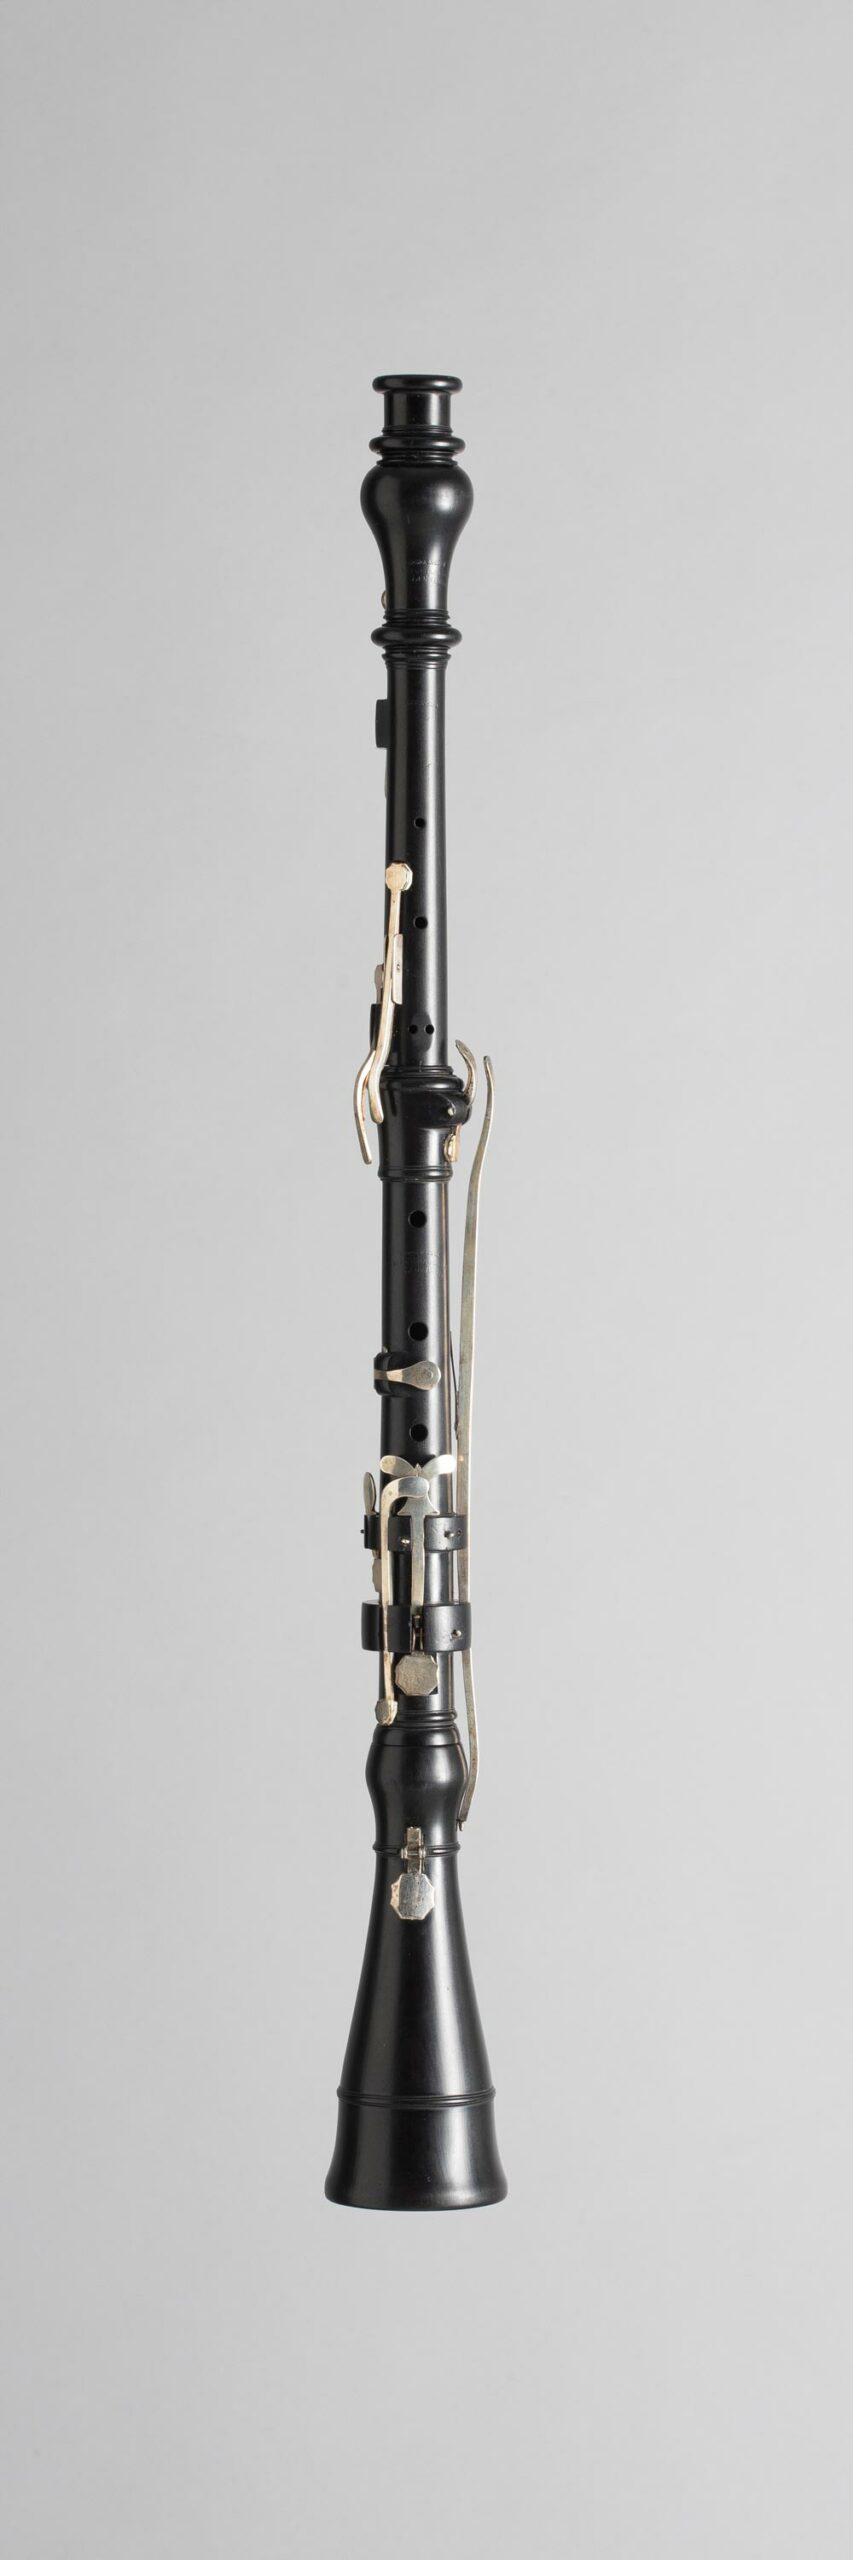 Hautbois en ébène, estampillé R.W. KEITH Instrument mis en vente par Vichy Enchères le 5 novembre 2022 © C. Darbelet